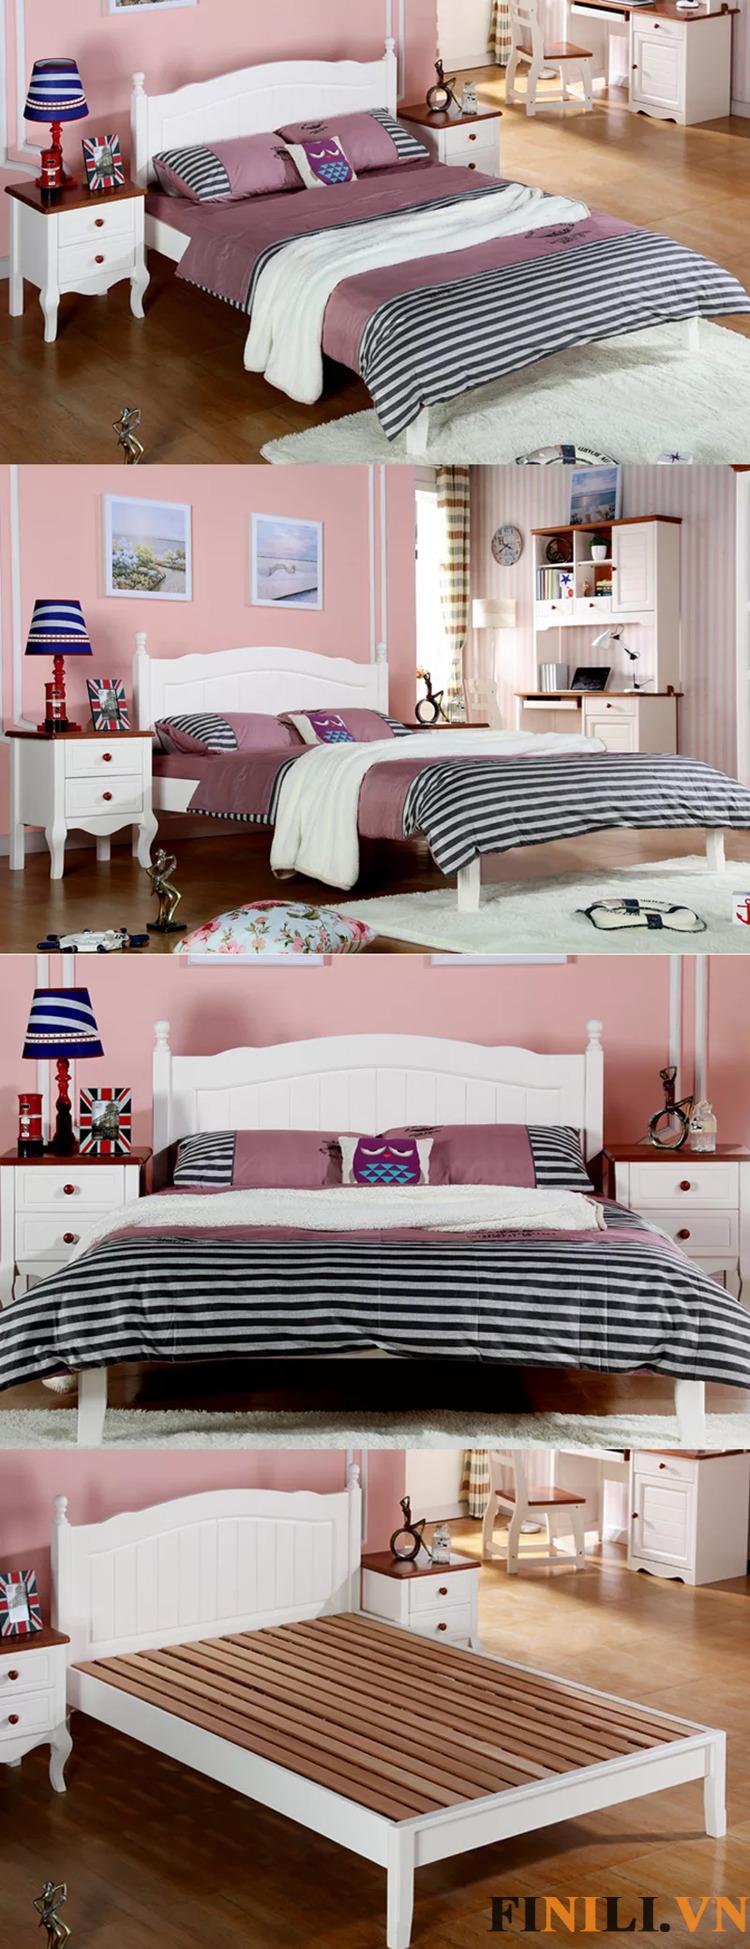 Giường ngủ mang đến cho không gian phòng ngủ một vẻ đẹp sang trọng và đẳng cấp.